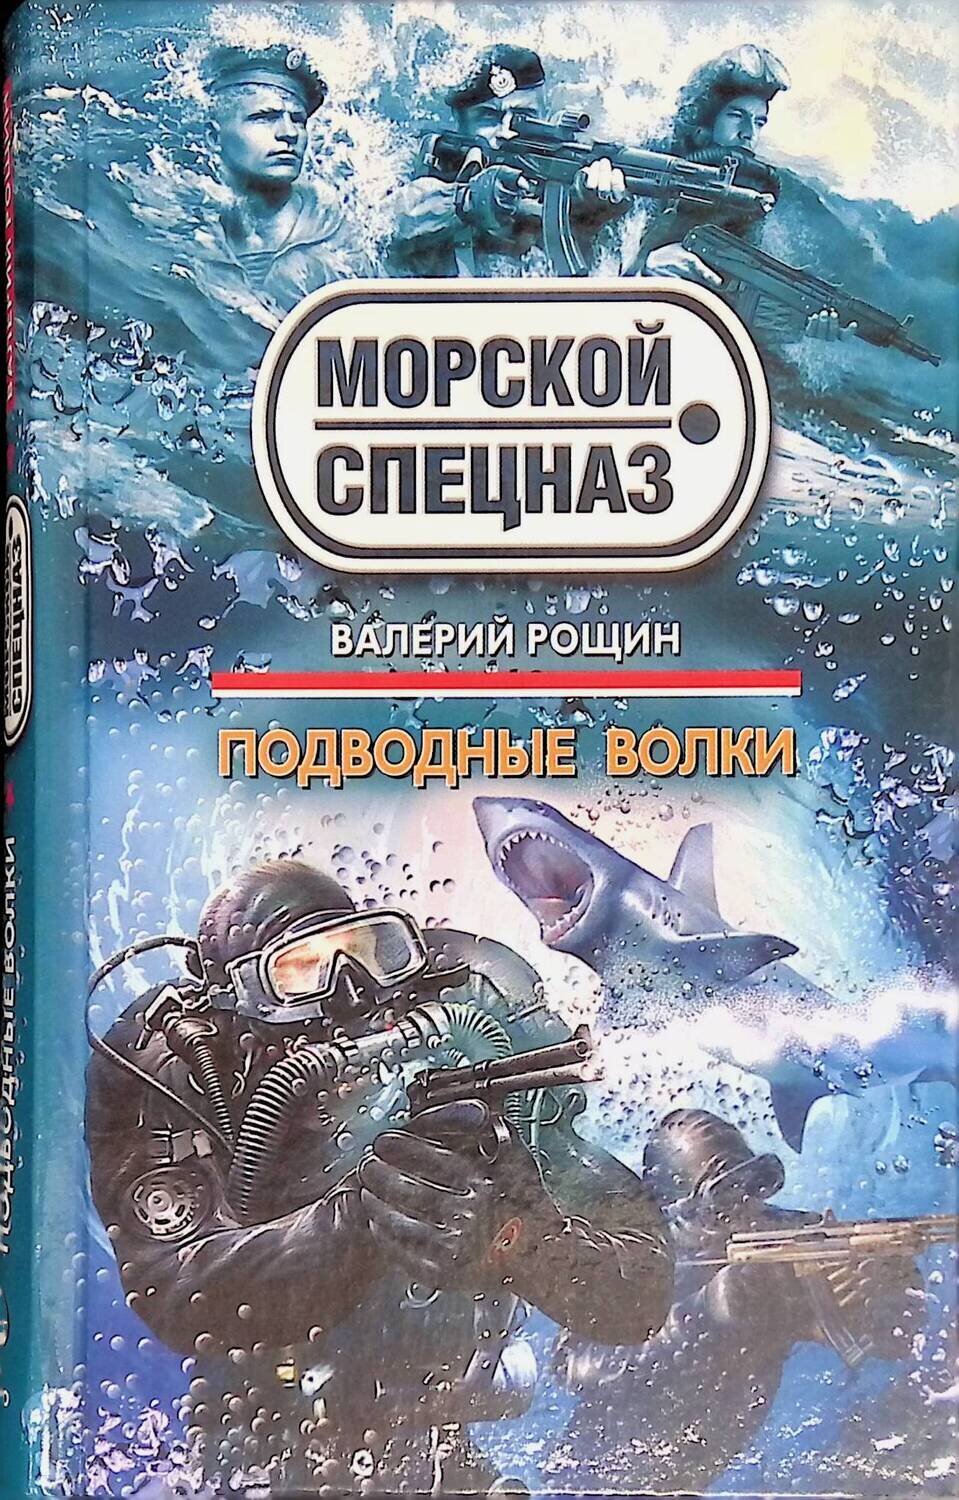 Подводные волки; Рощин Валерий Георгиевич